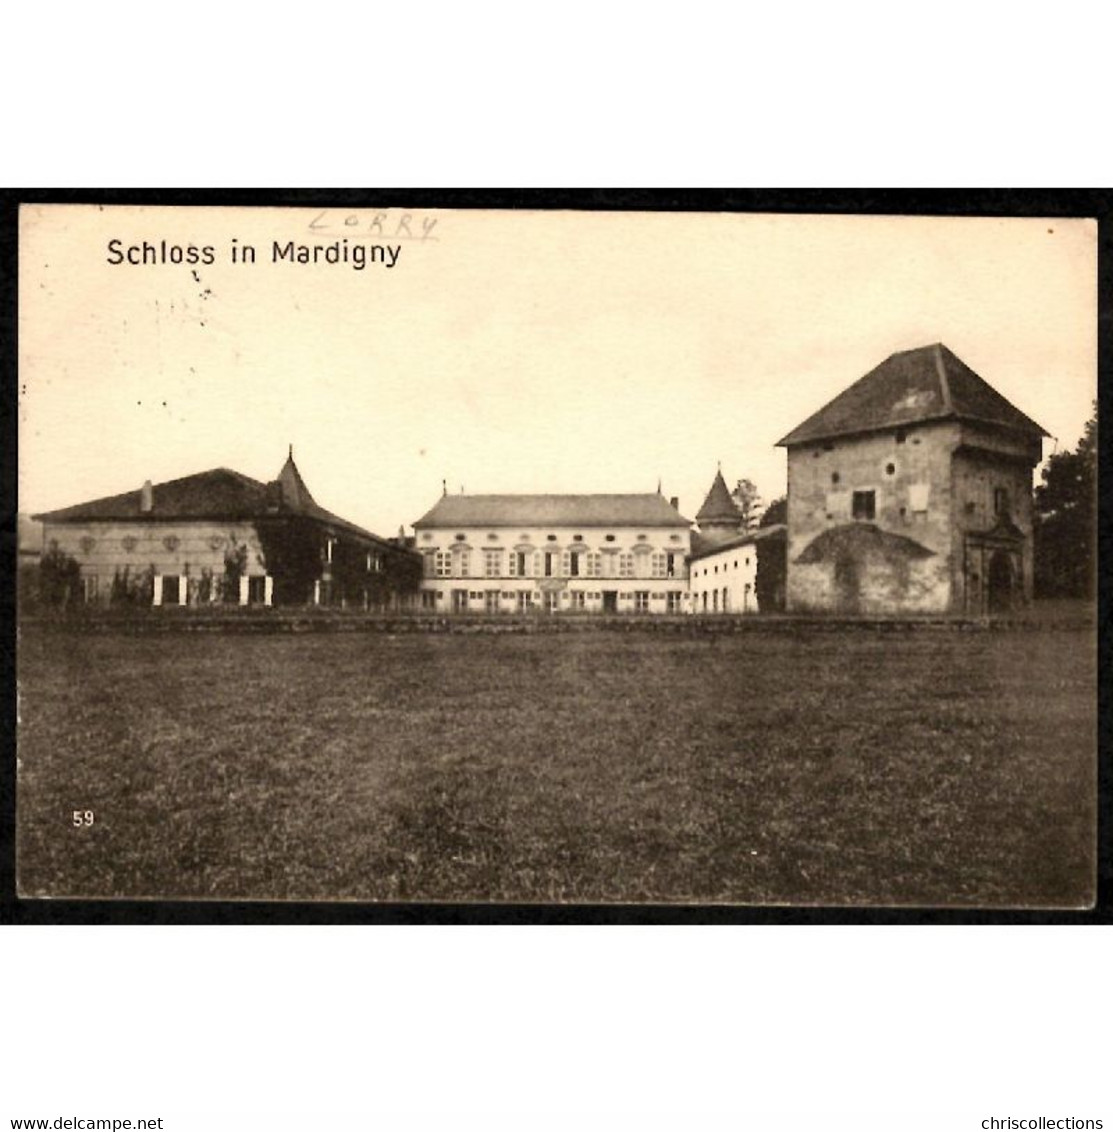 57 - LORRY MARDIGNY (Moselle) - Schloss In Mardigny - Metz Campagne